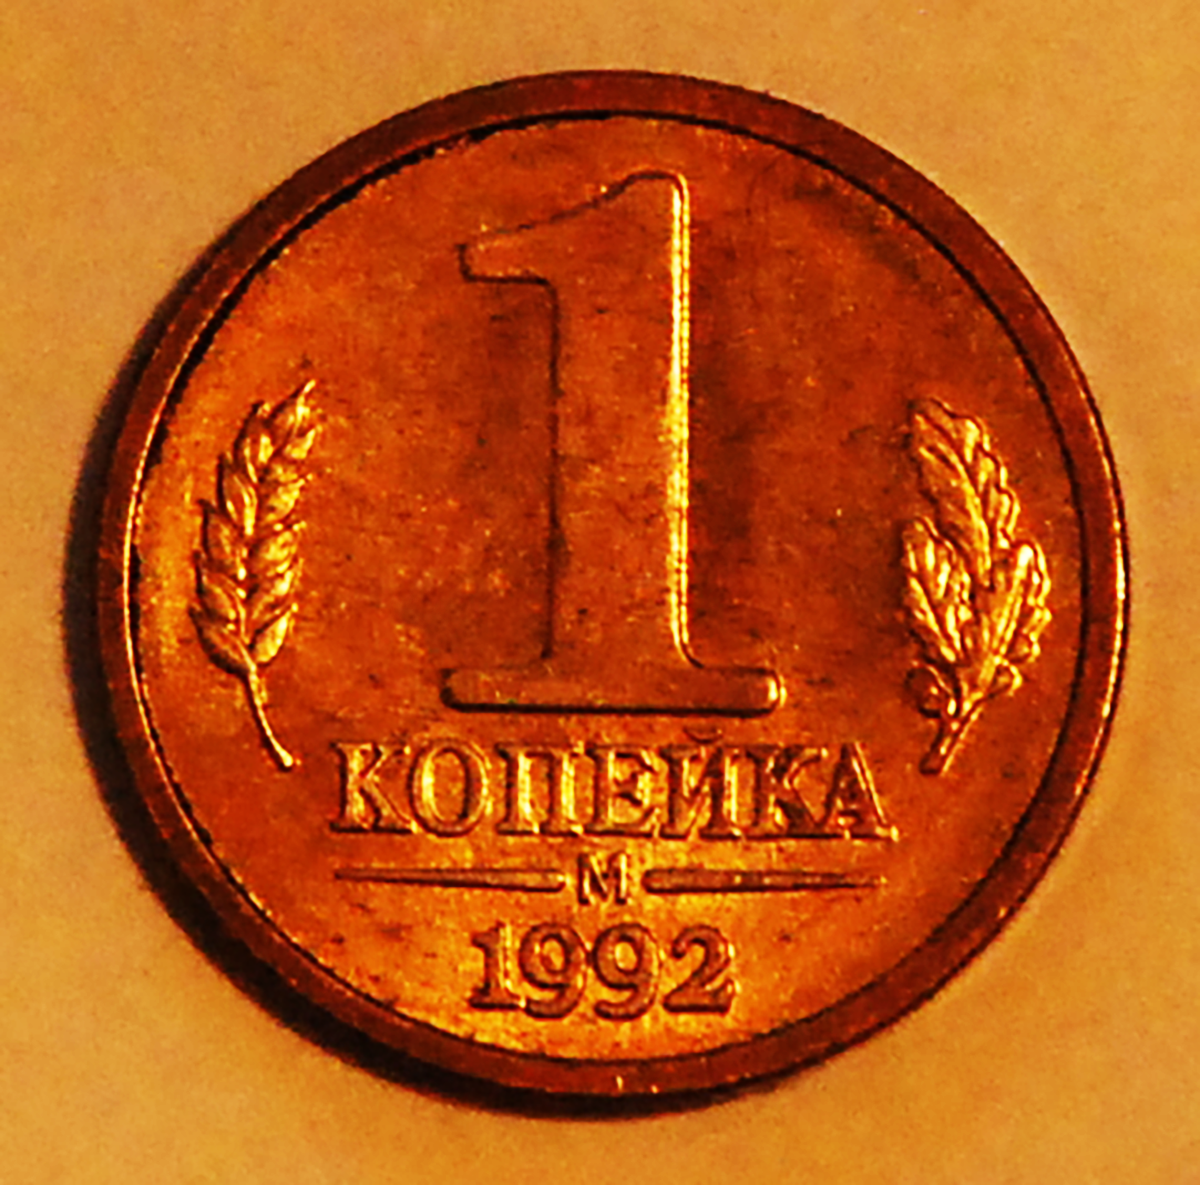 5 рублей хватит. Монеты ельцинского периода. Деньги ельцинской эпохи. Самые дорогие монеты. Ельцинские рубли.